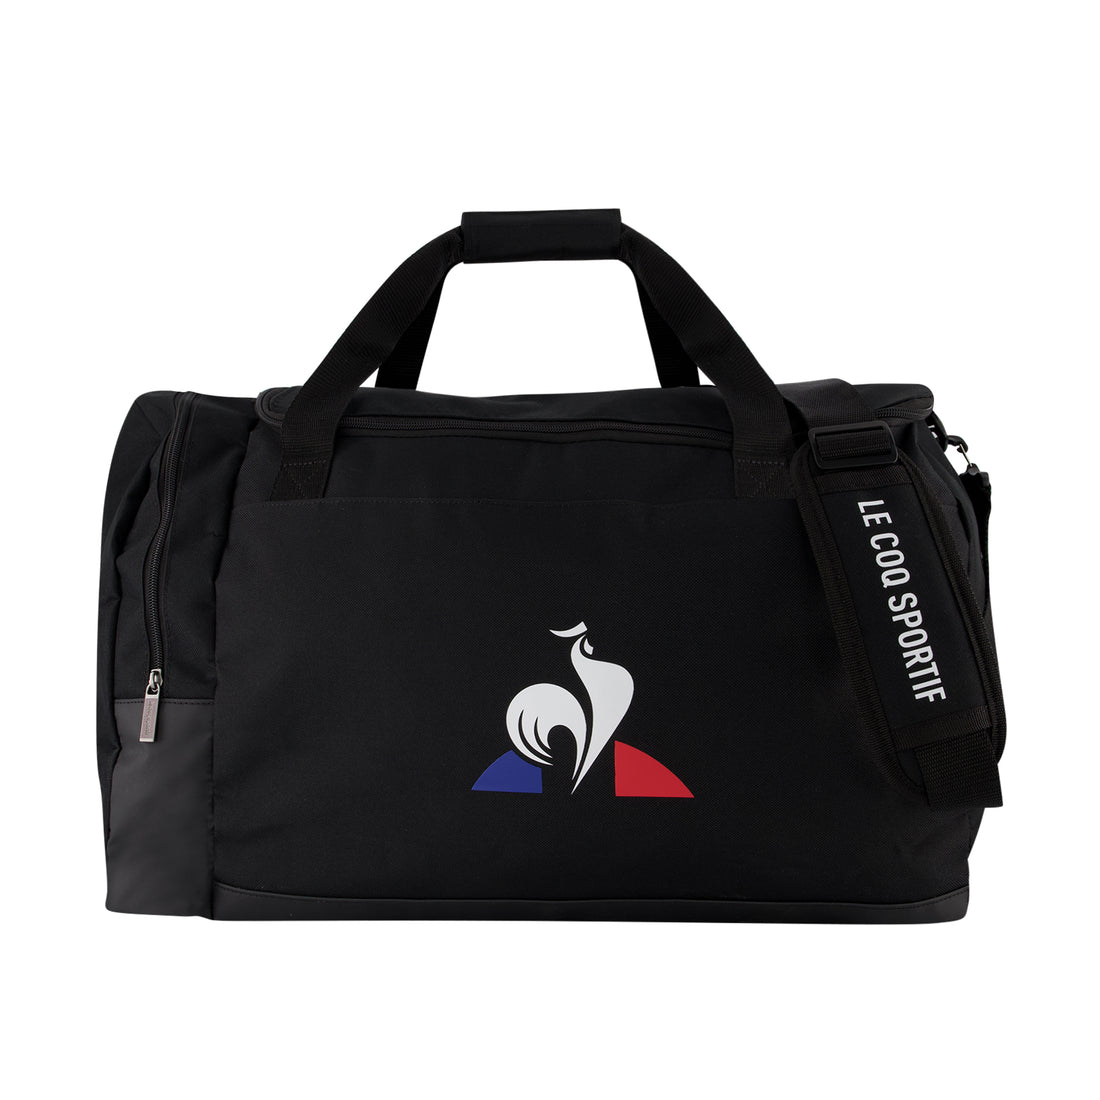 2020933-TRAINING Sportbag L/XL black  | Bag de sport